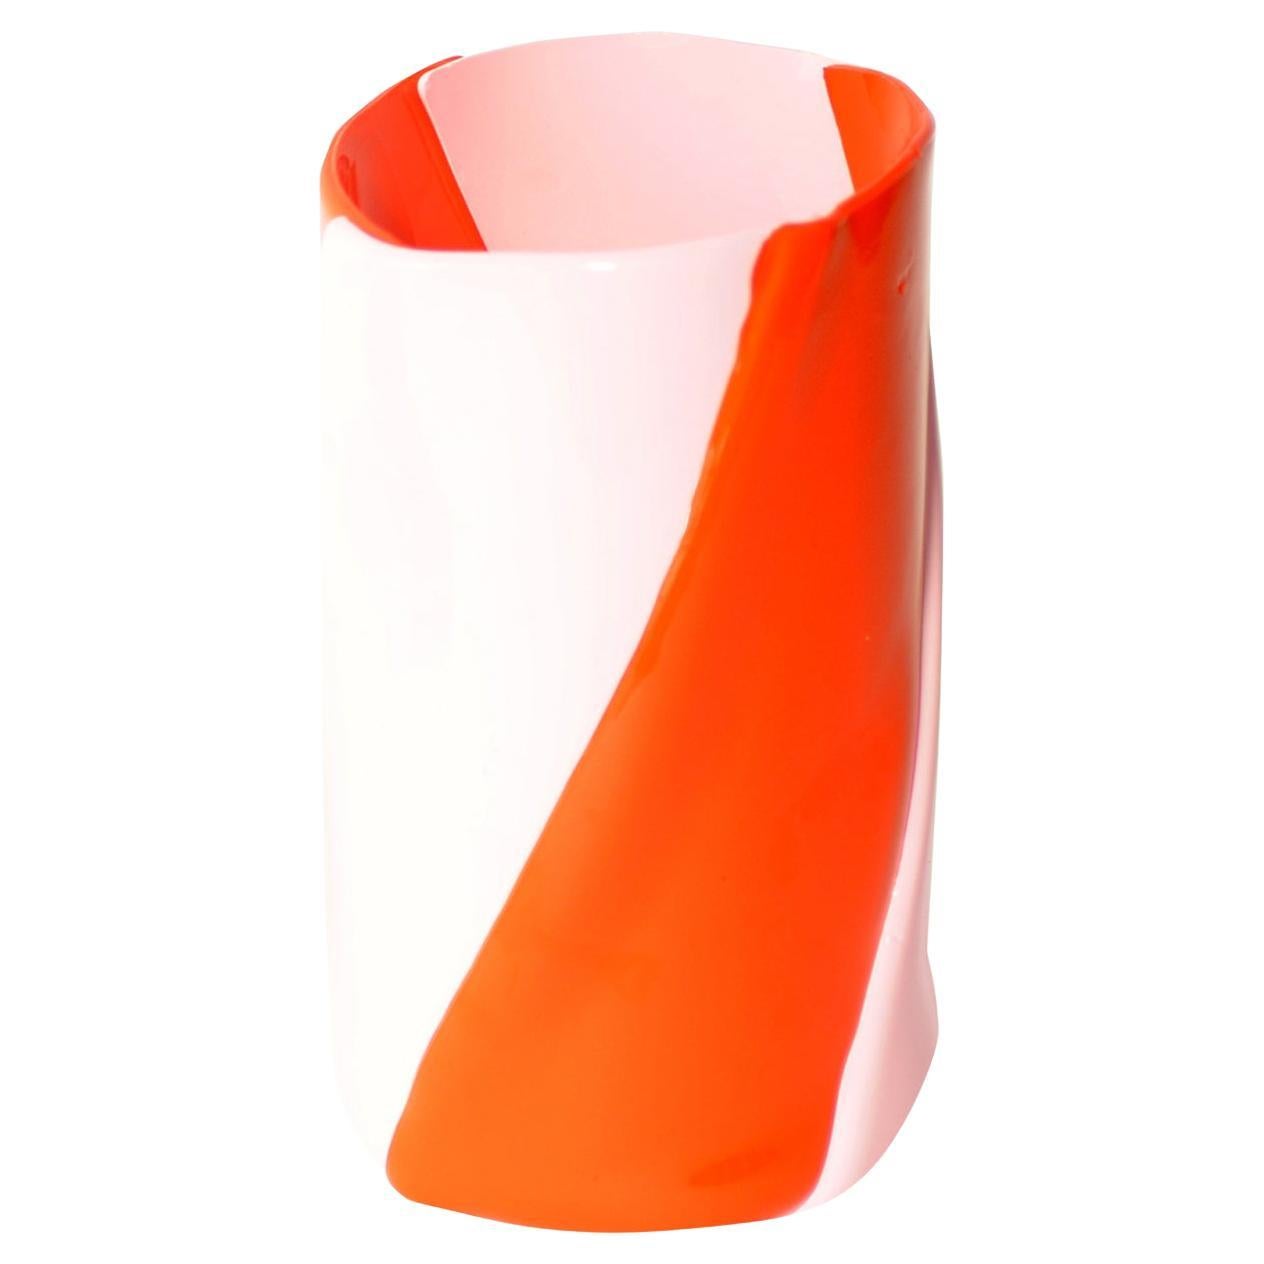 Twirl L Vase For Sale